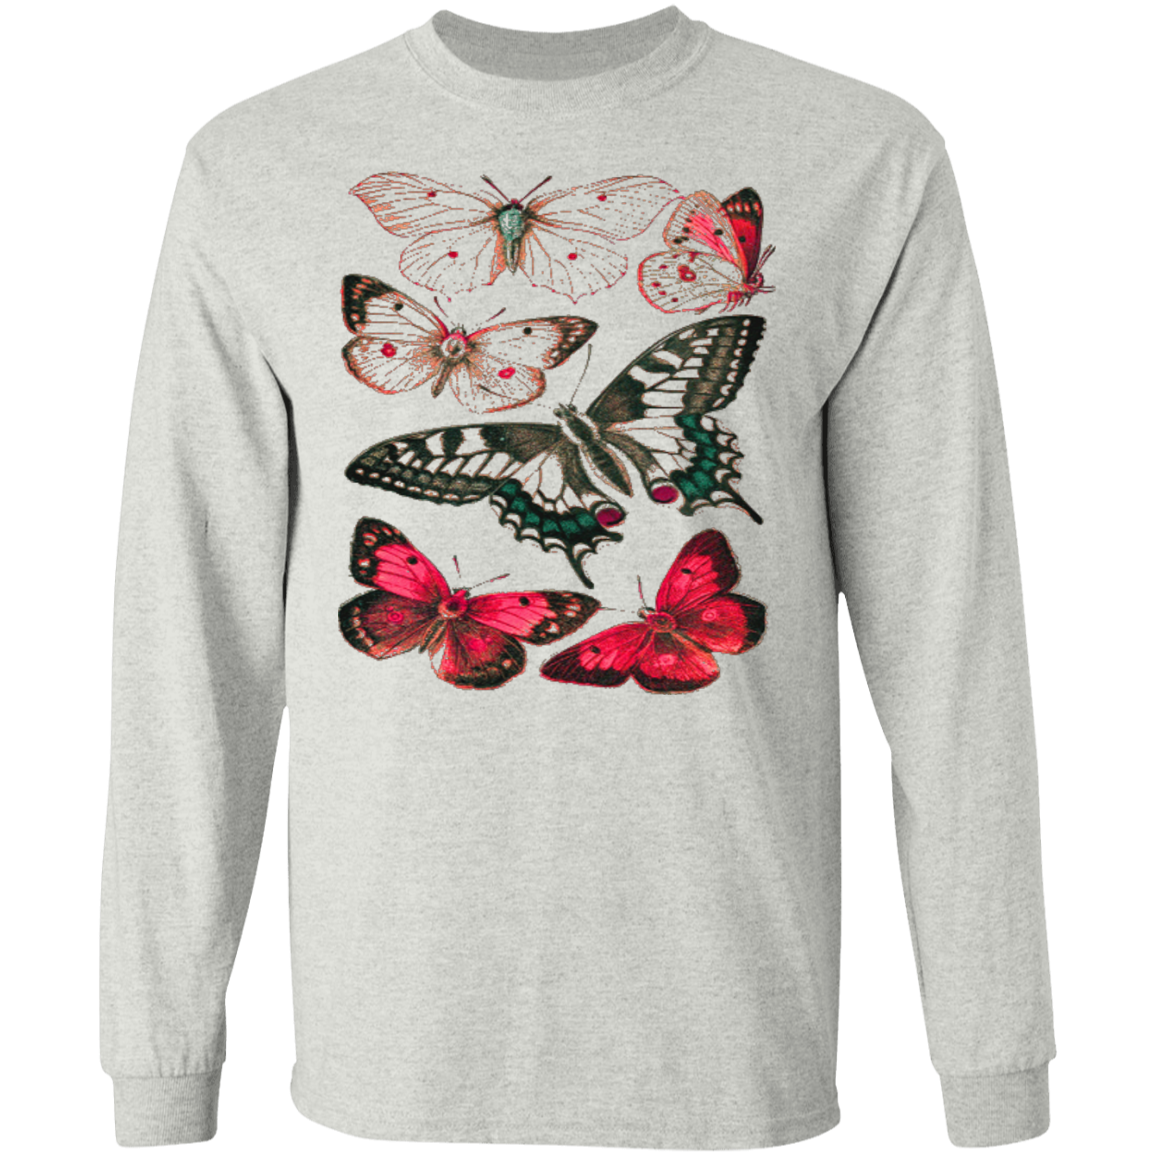 Butterfly long sleeve T'shirt